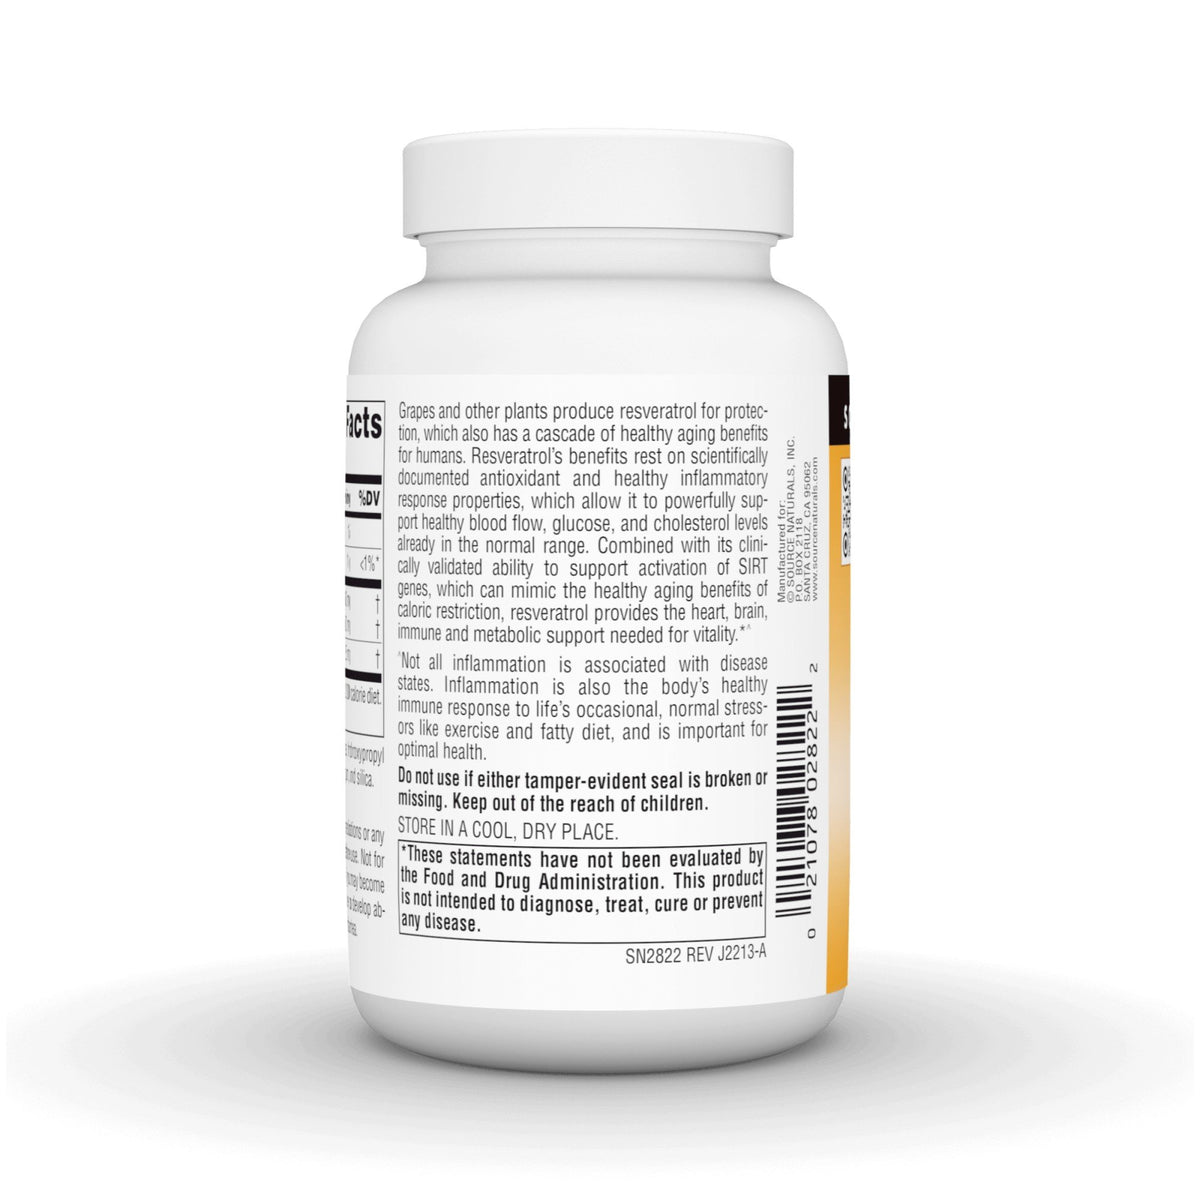 Source Naturals, Inc. Resveratrol 500 500 mg 60 Tablet